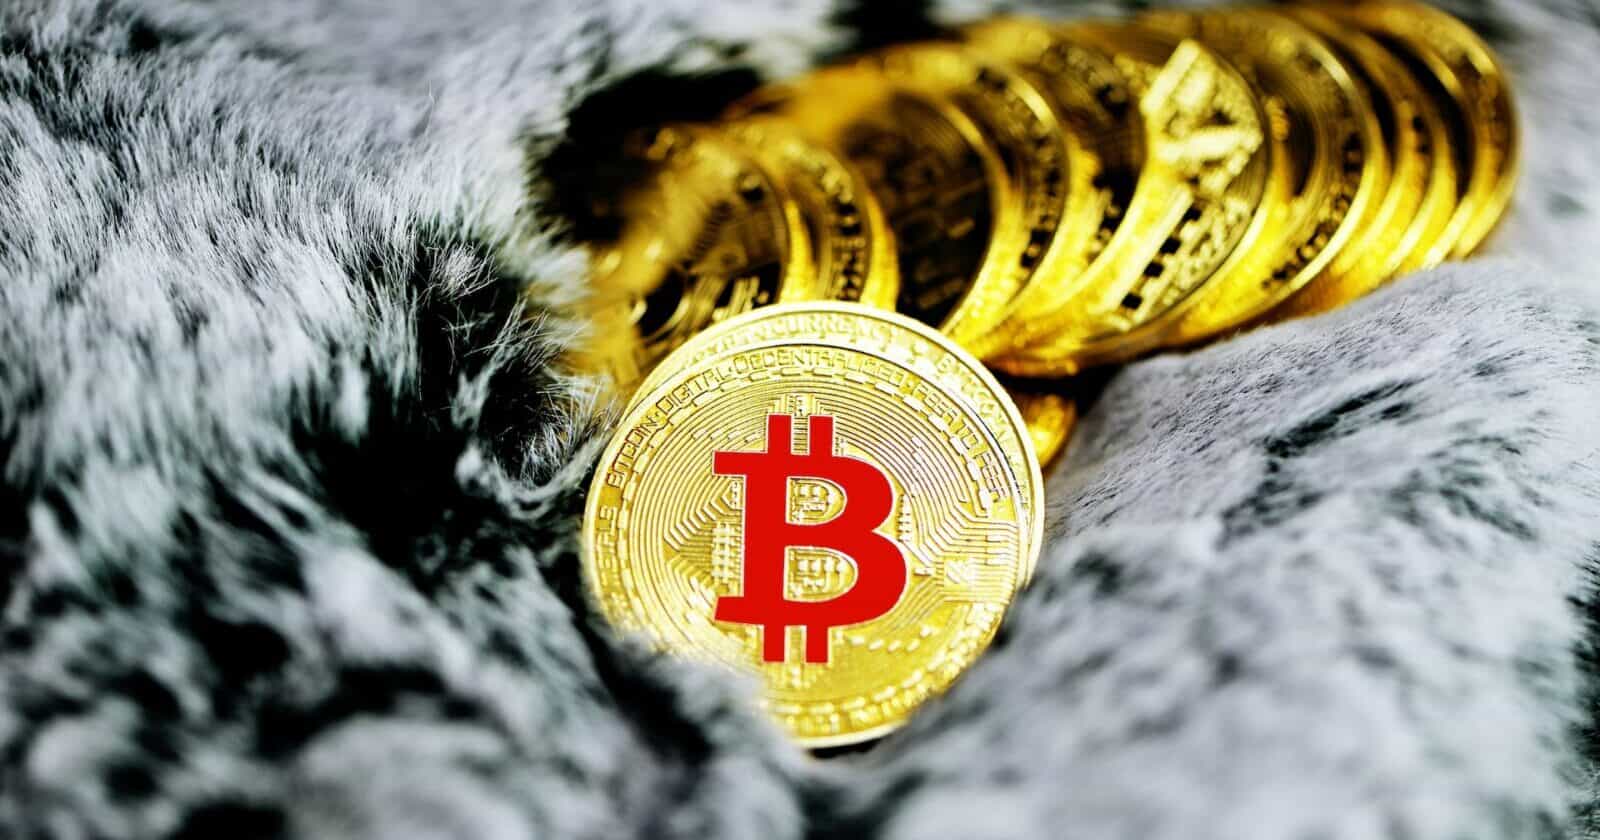 Bitcoin Slid Below $19k Amidst Growing Crowd's Interest